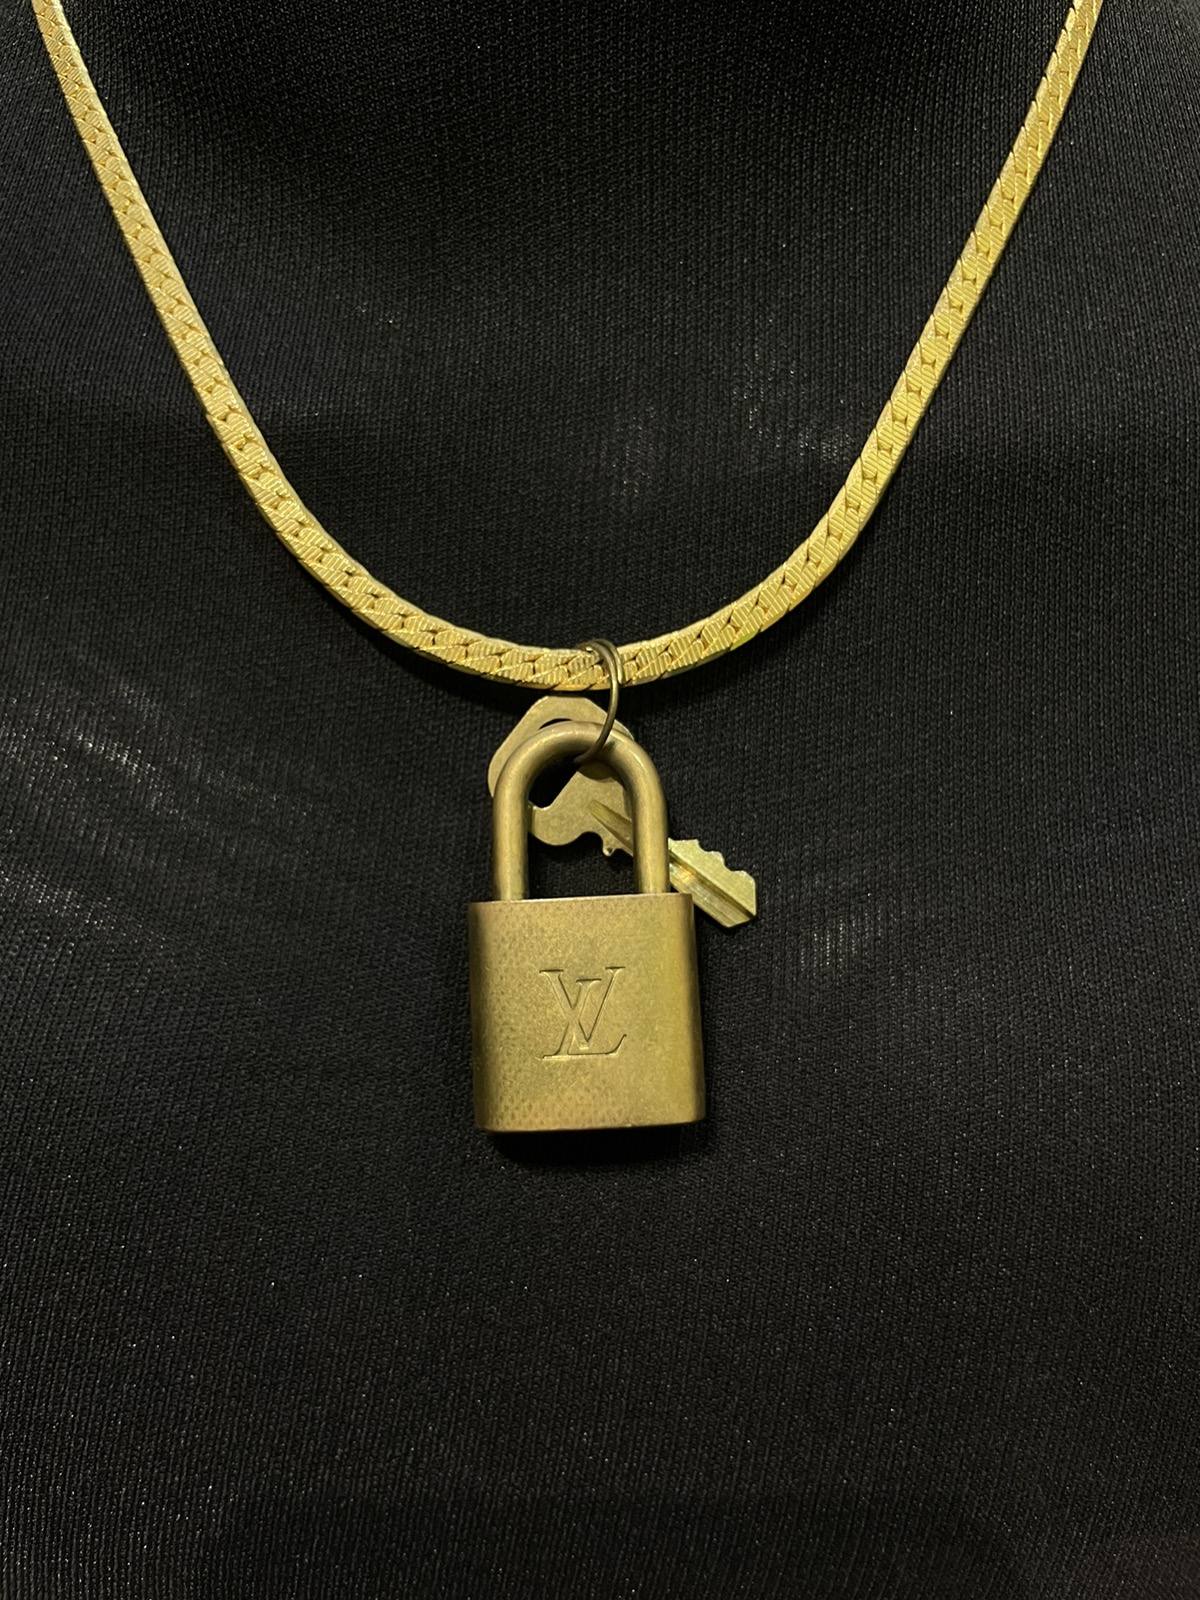 Louis Vuitton /key / Gold Necklace - 3